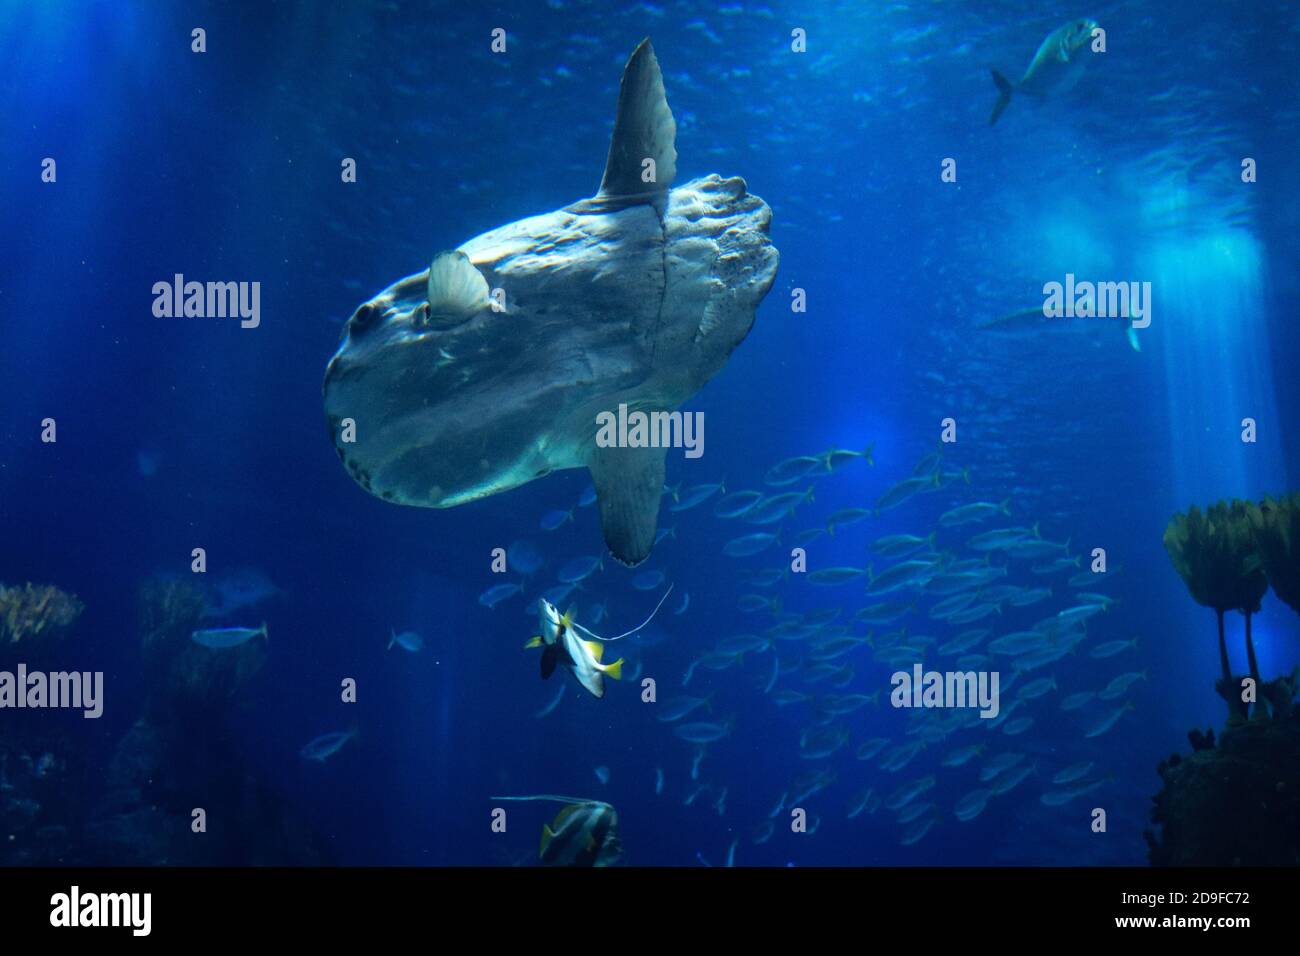 Mondfisch (Mondfisch) schwimmt im blauen Meerwasser Stockfoto